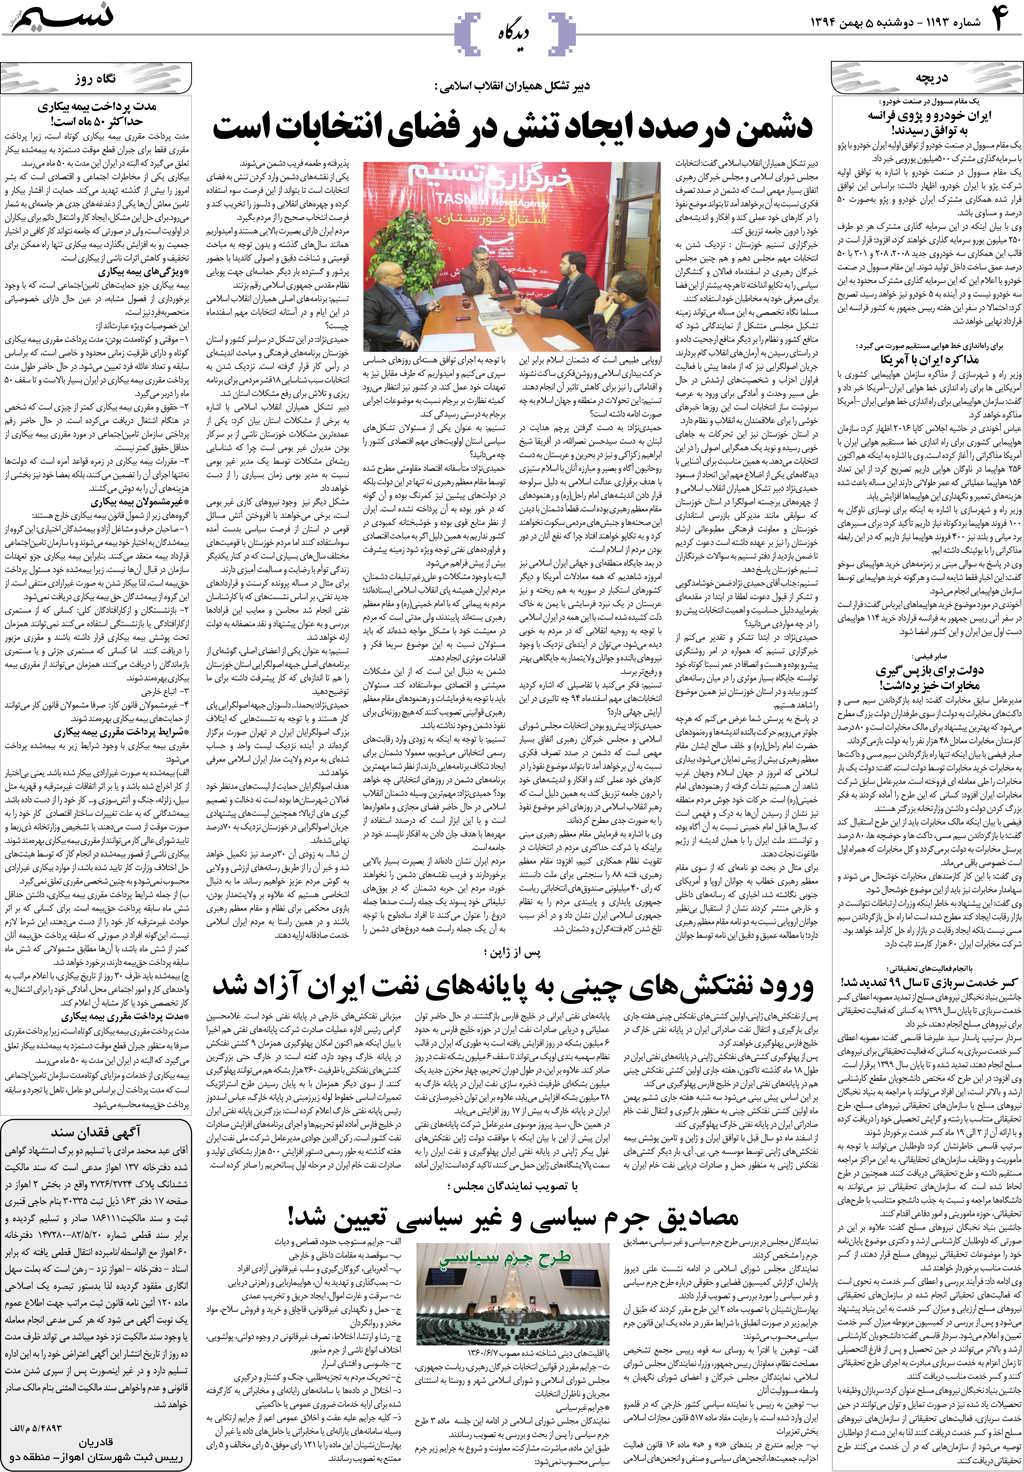 صفحه دیدگاه روزنامه نسیم شماره 1193